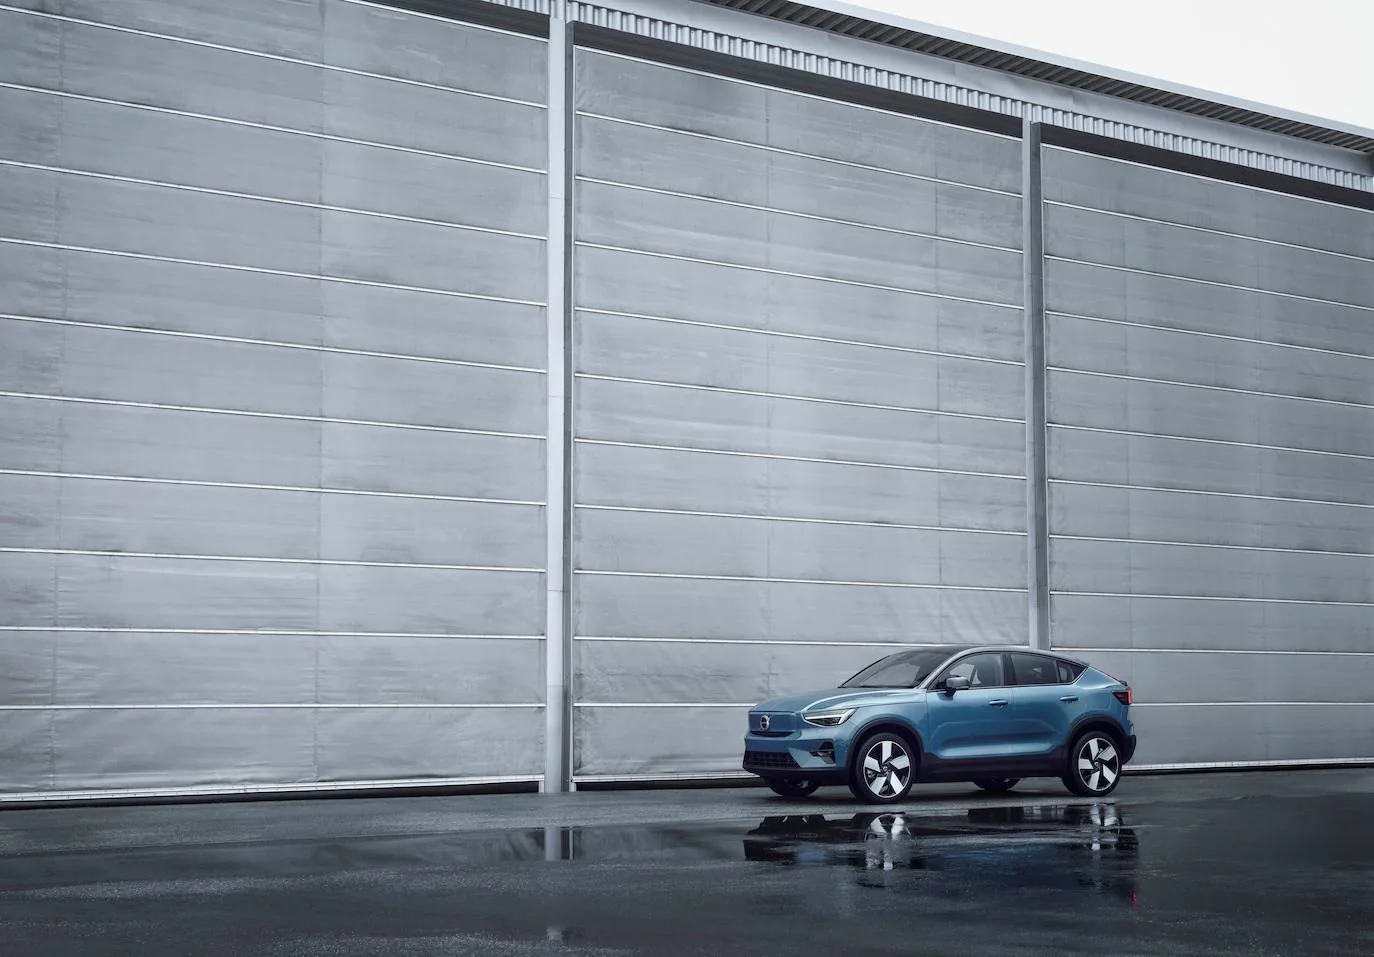 Fotos: Fotogalería: así es el C40, el nuevo eléctrico de Volvo